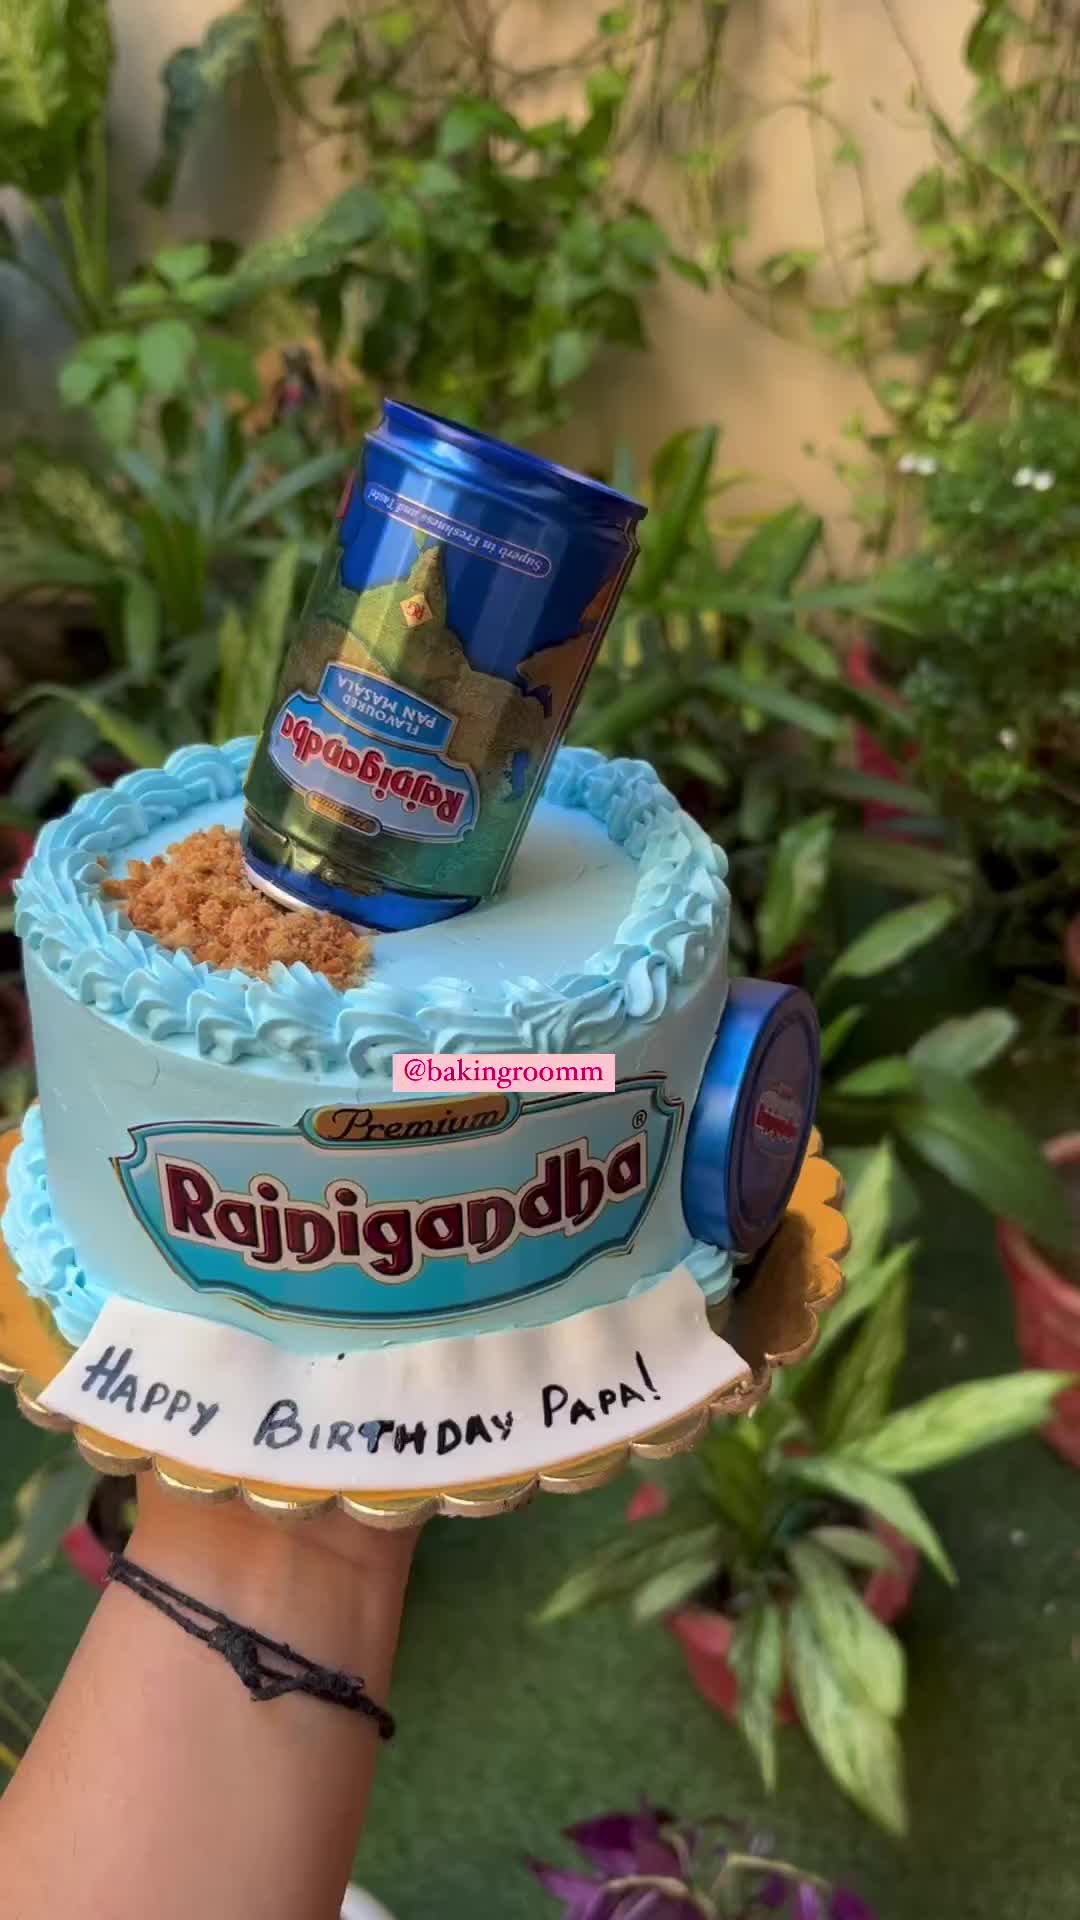 Best Rajnigandha Theme Cake In Ghaziabad | Order Online